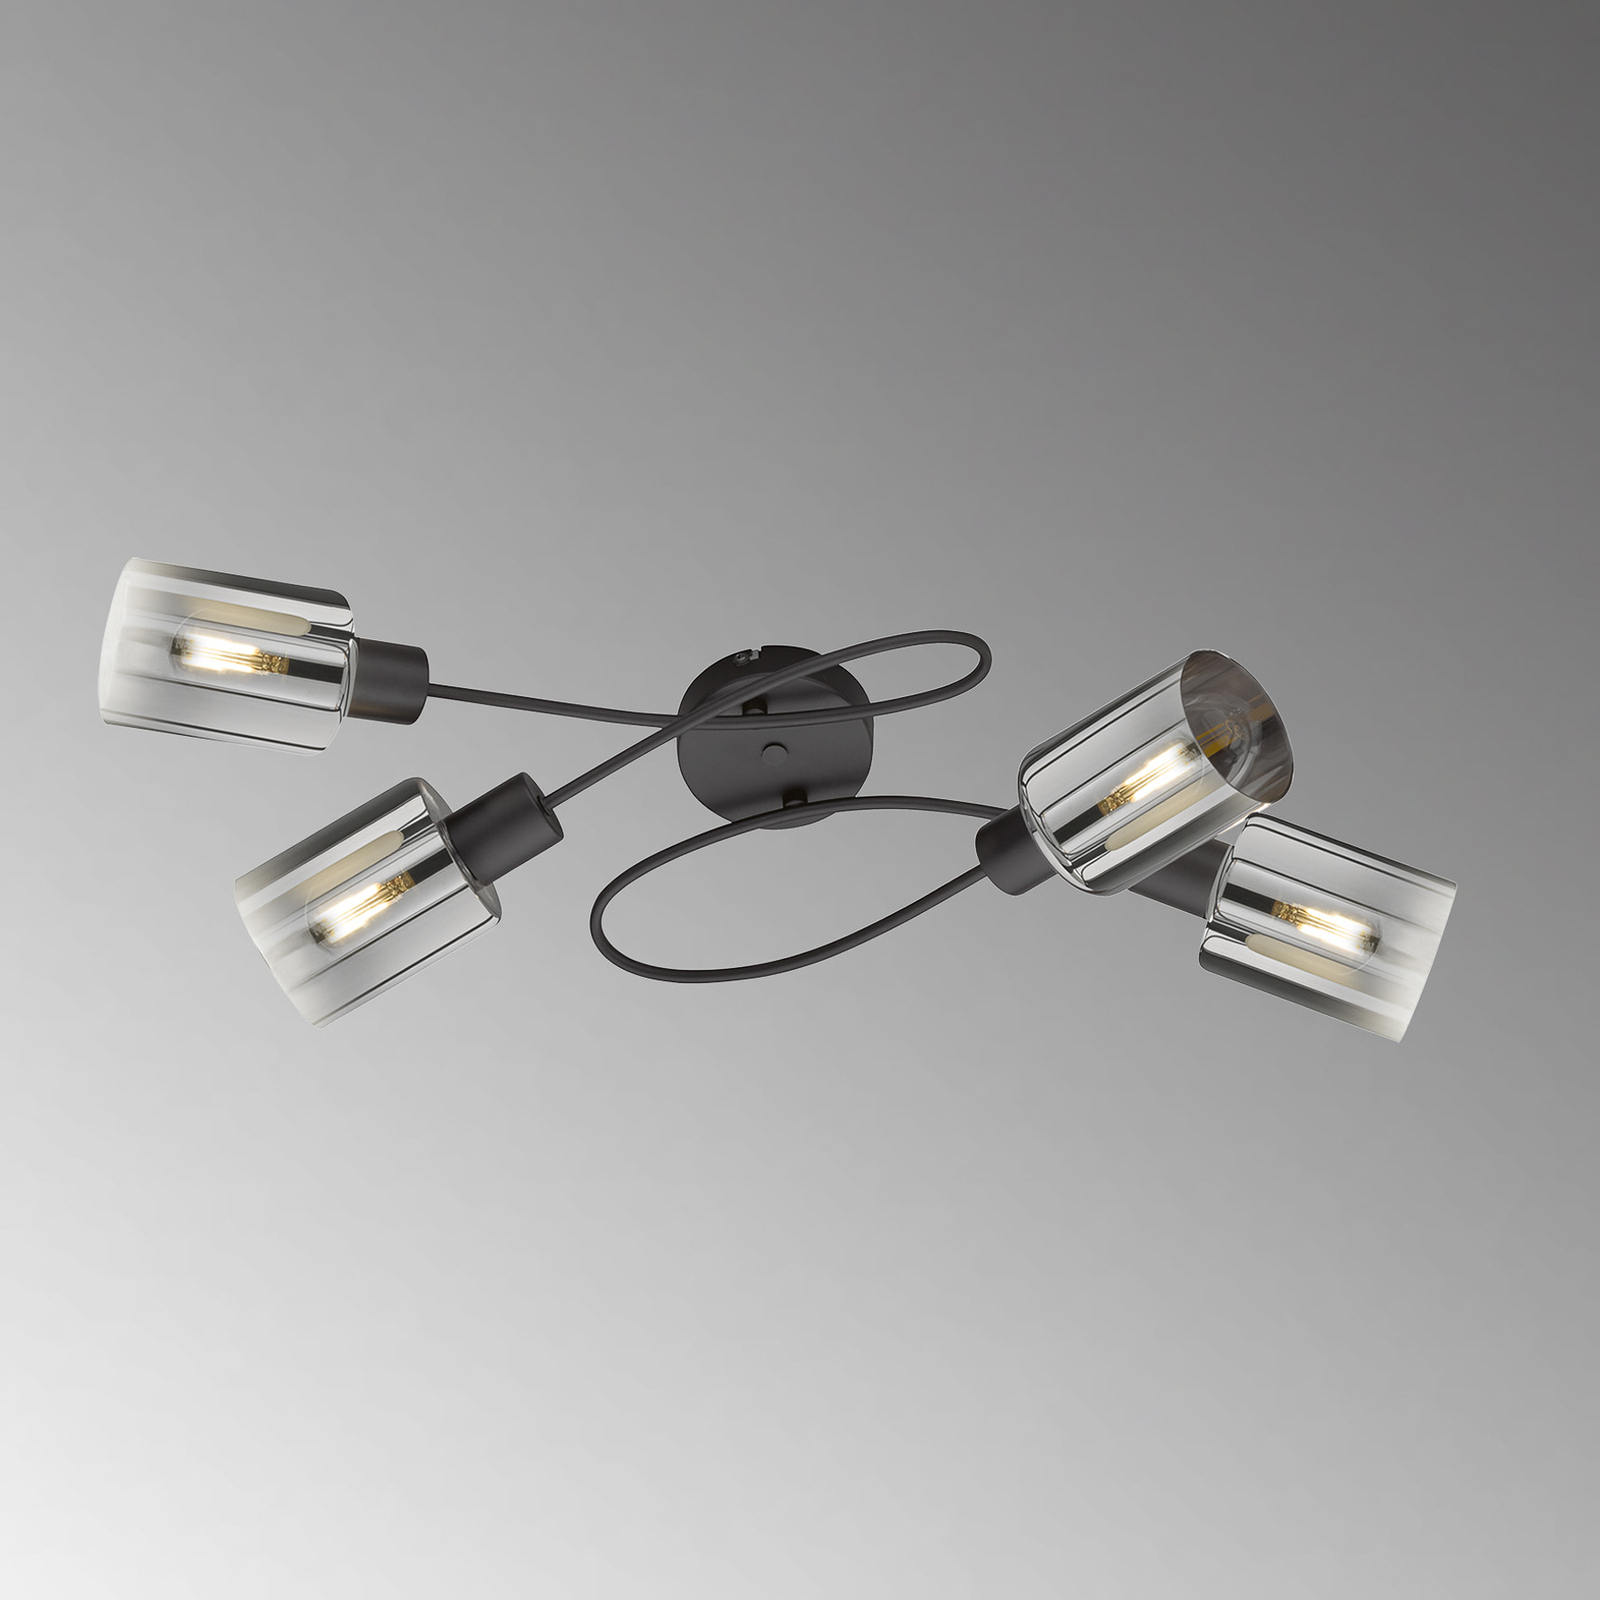 Iska ceiling lamp with arms, four-bulb